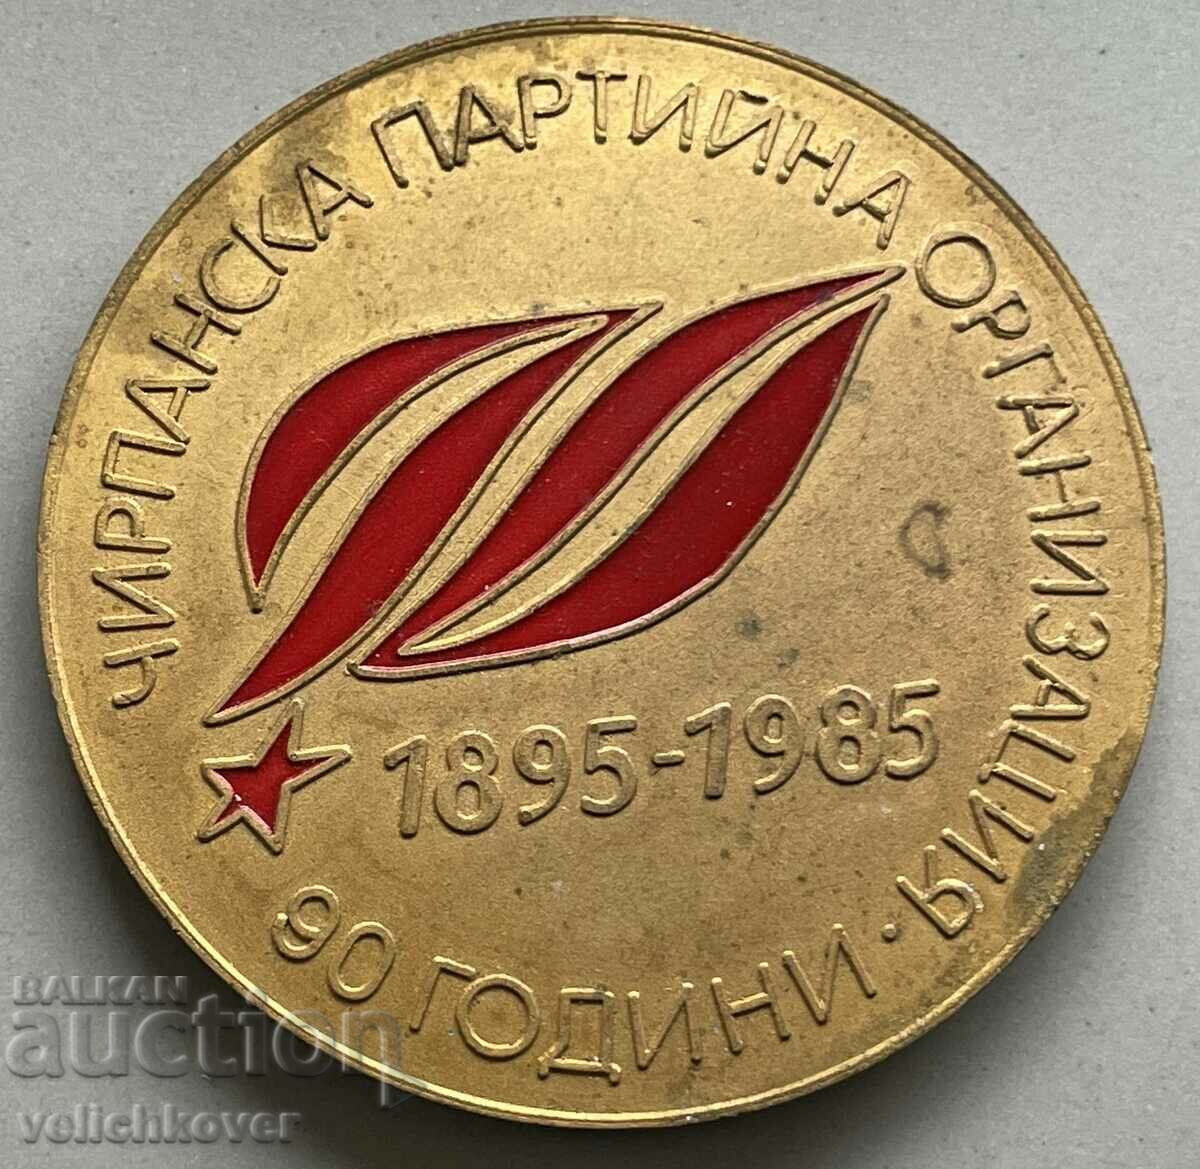 3412 Πλακέτα Βουλγαρίας 90 χρόνια οργάνωση Chirpan Party 1985